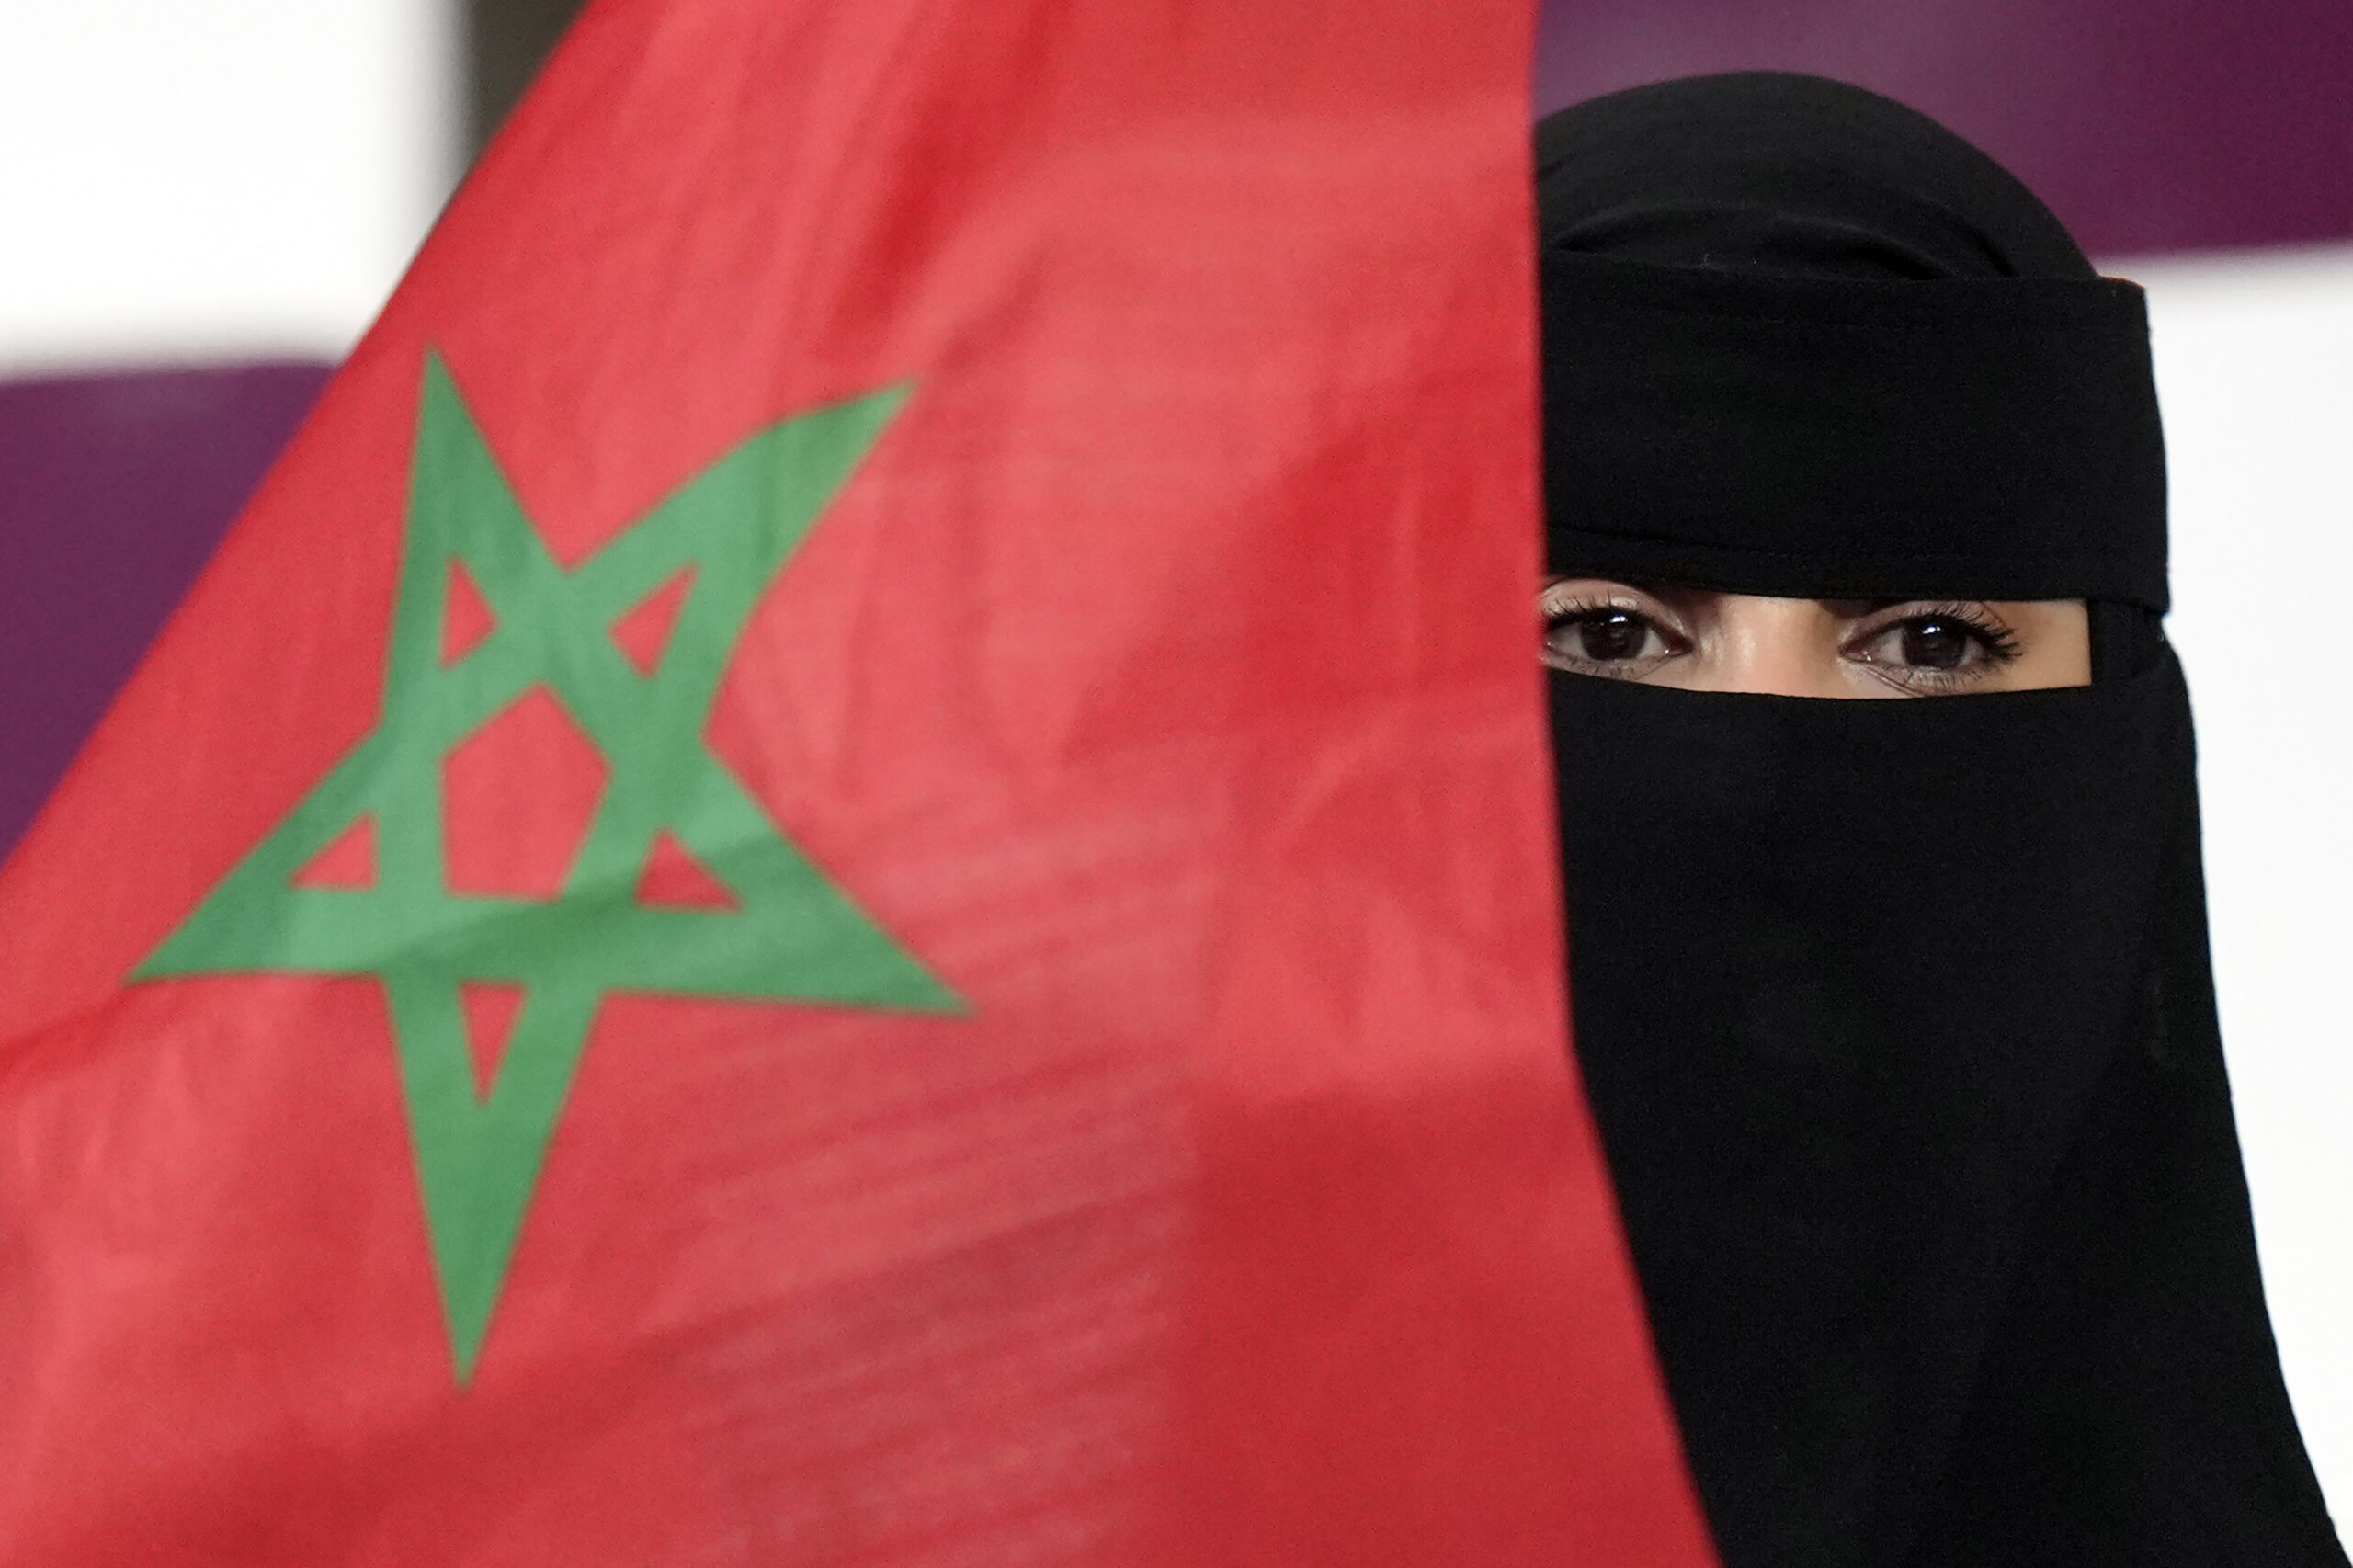 Μαρόκο: Ο δικηγόρος της 11χρονης που έπεσε θύμα βιασμού ζητά νόμο για να προστατεύονται τα παιδιά από τη σεξουαλική βία